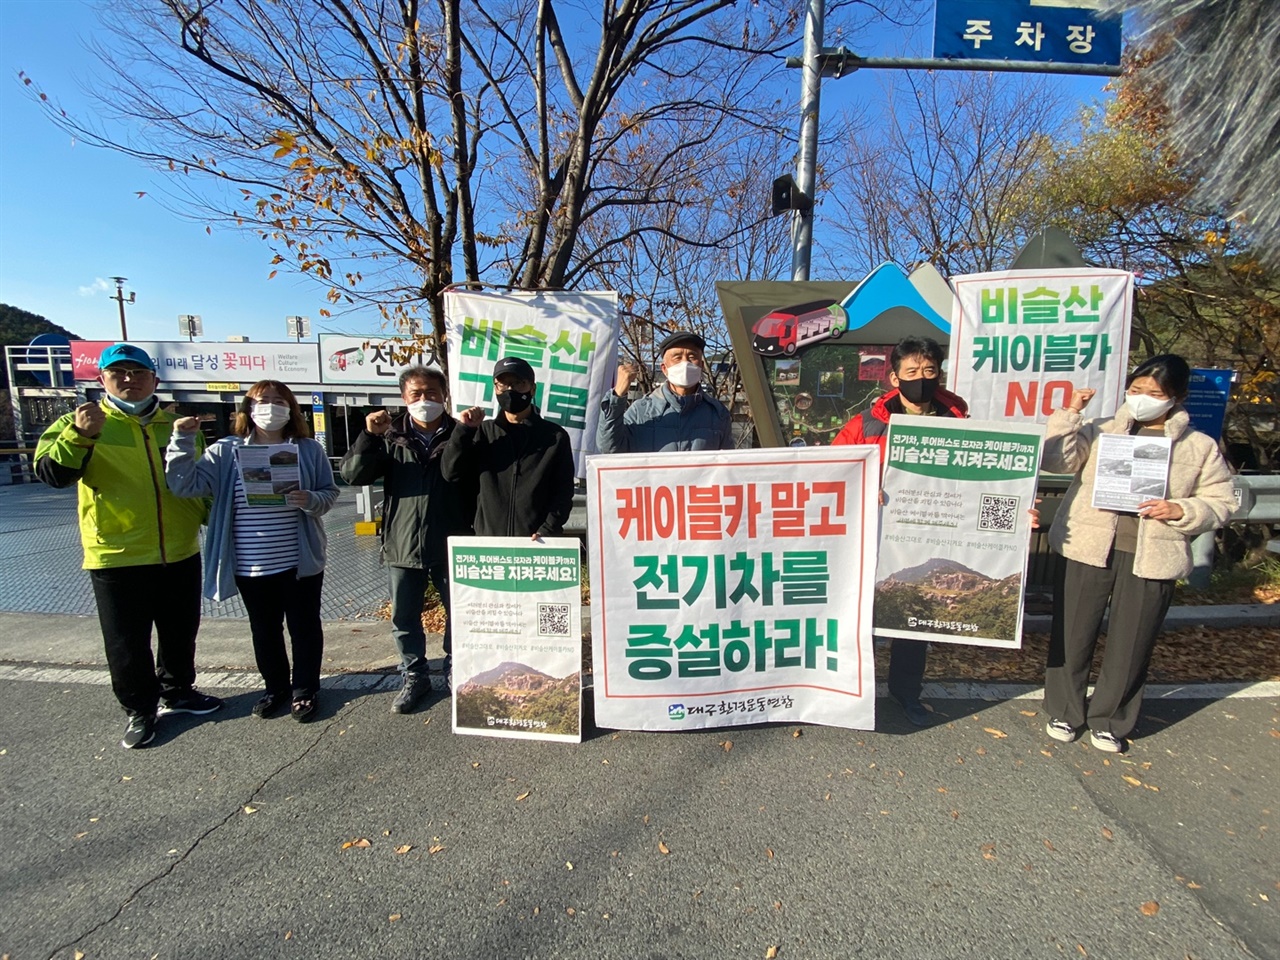 비슬산 현장에서 벌이지고 있는 비슬산 케이블카 반대 서명운동 및 캠페인